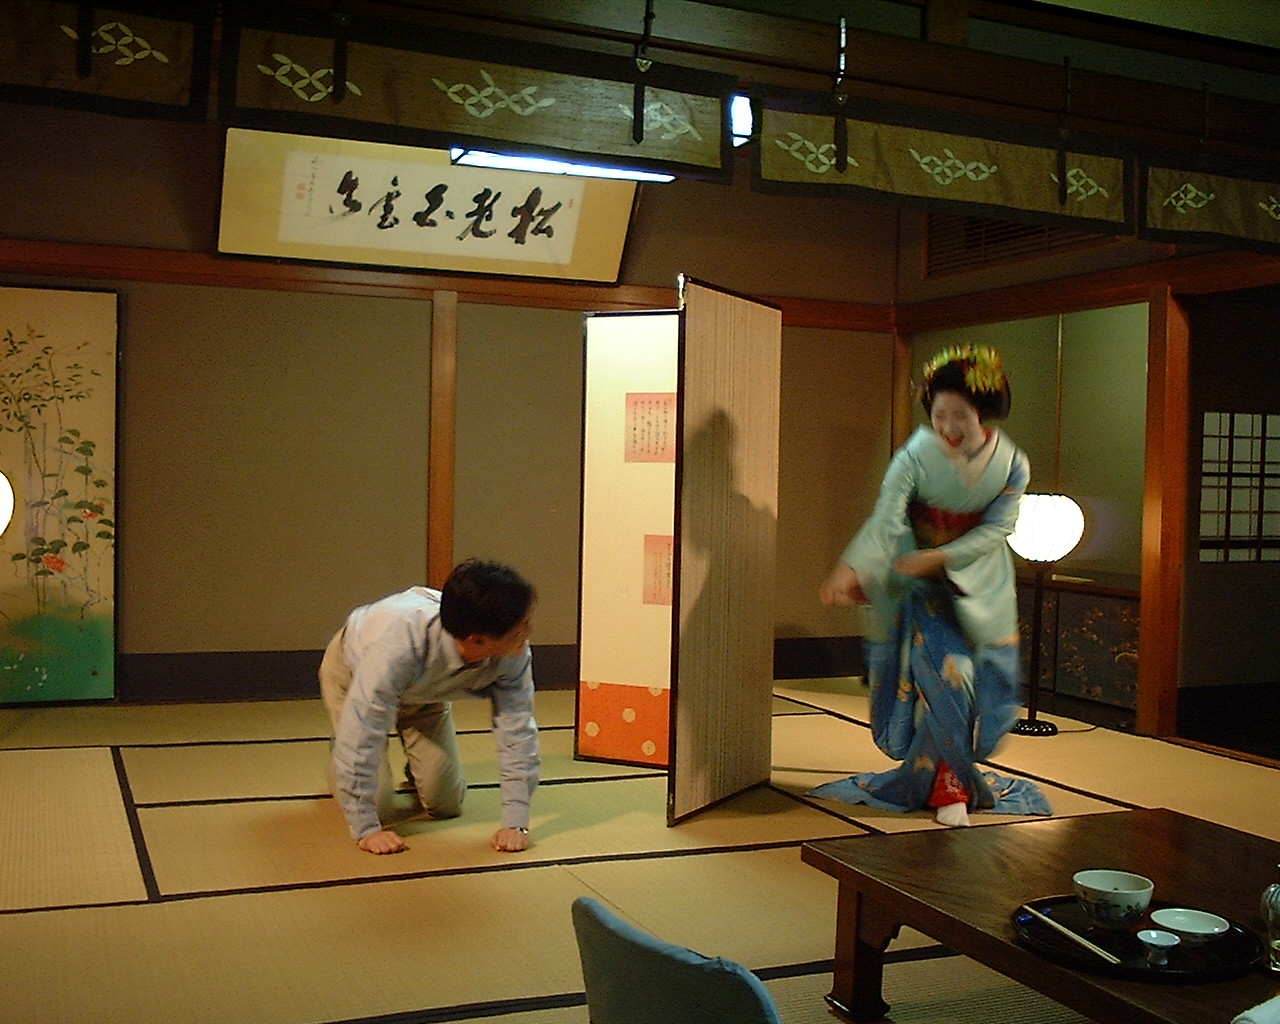 一見さんでも祇園でお茶屋遊びができる 京都市観光協会の紹介システムとは モニオの部屋